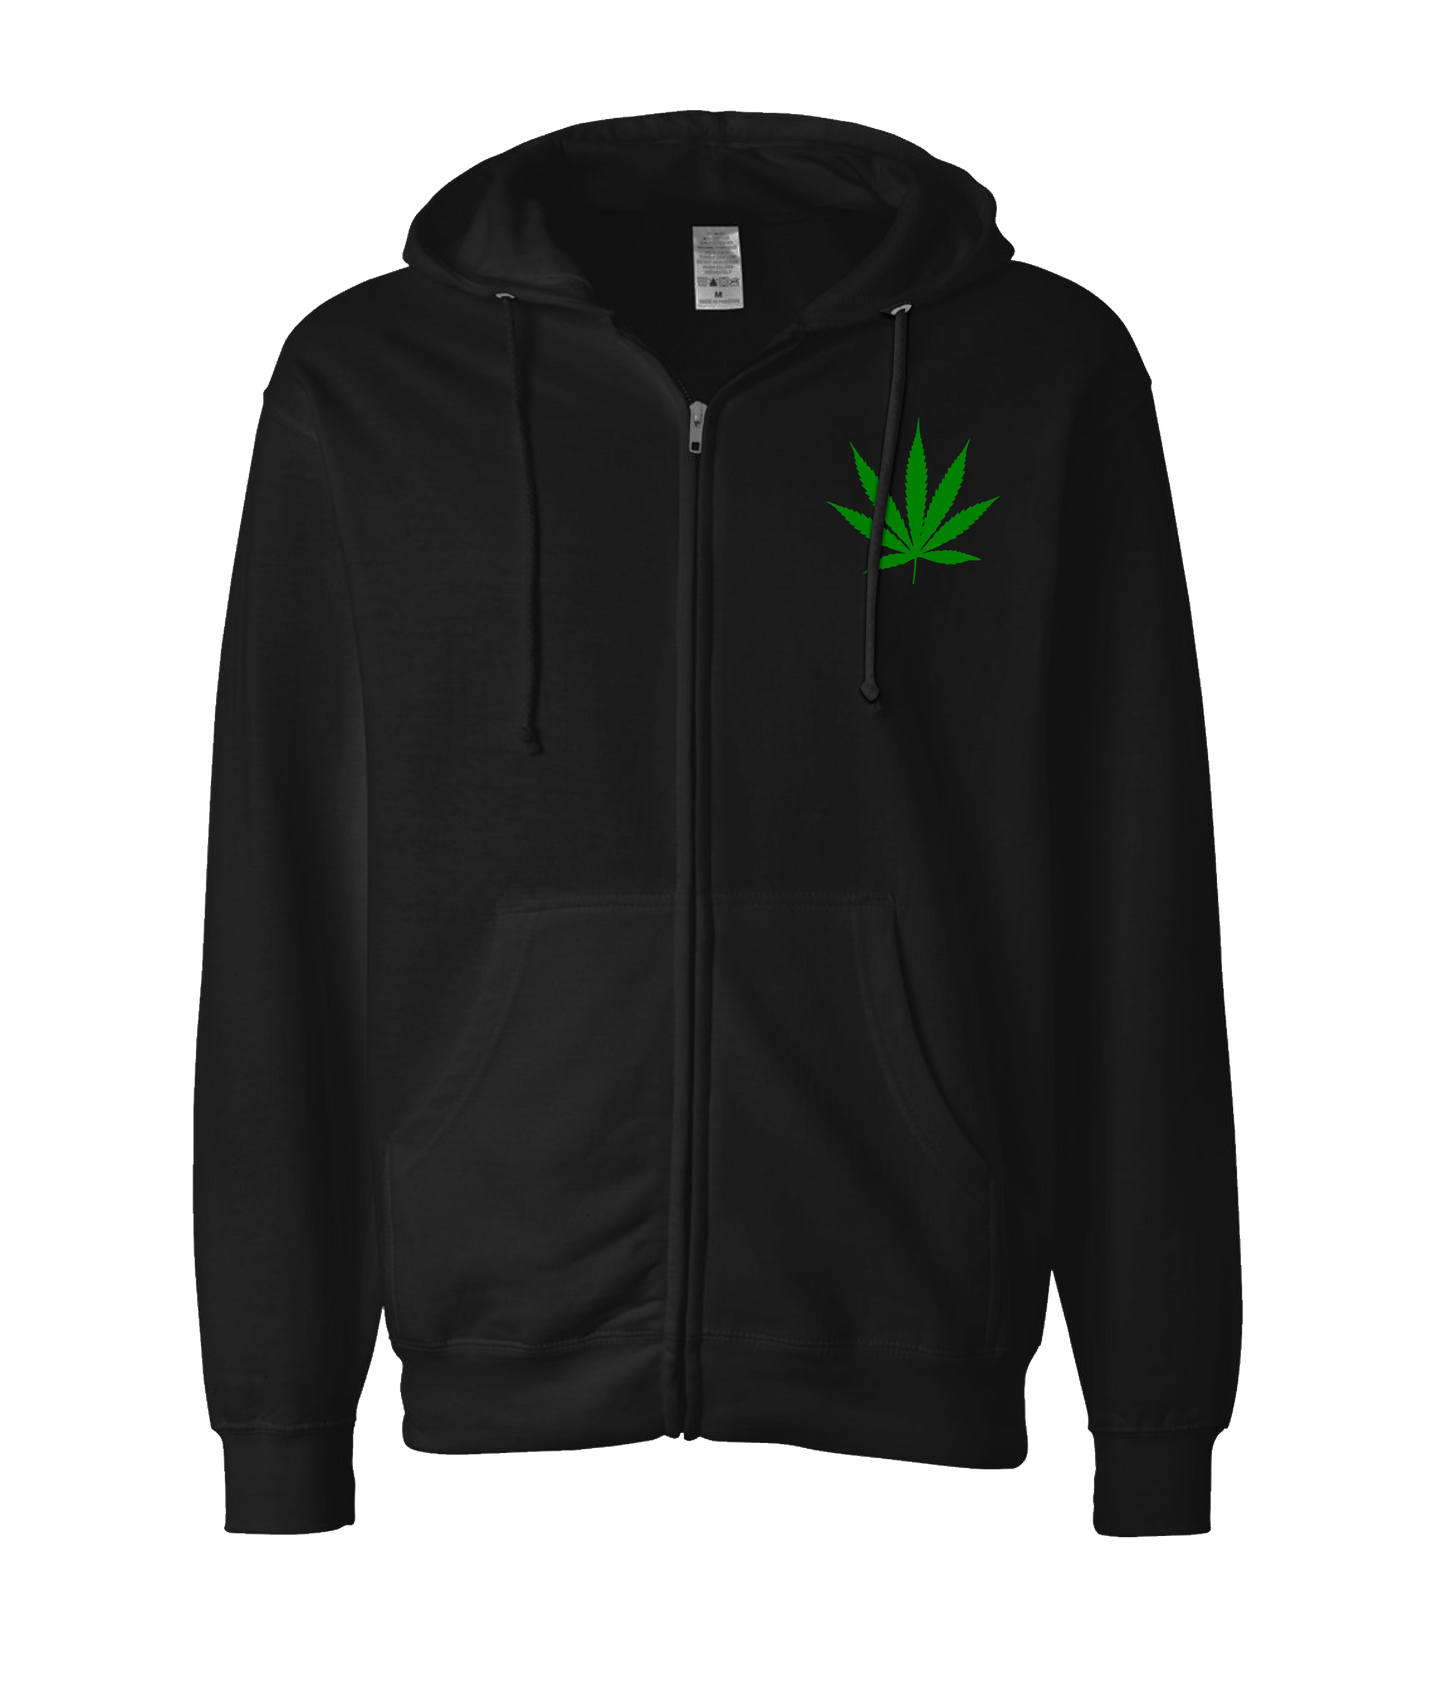 4evaGood - Cannabis Leaf - Black Zip Up Hoodie